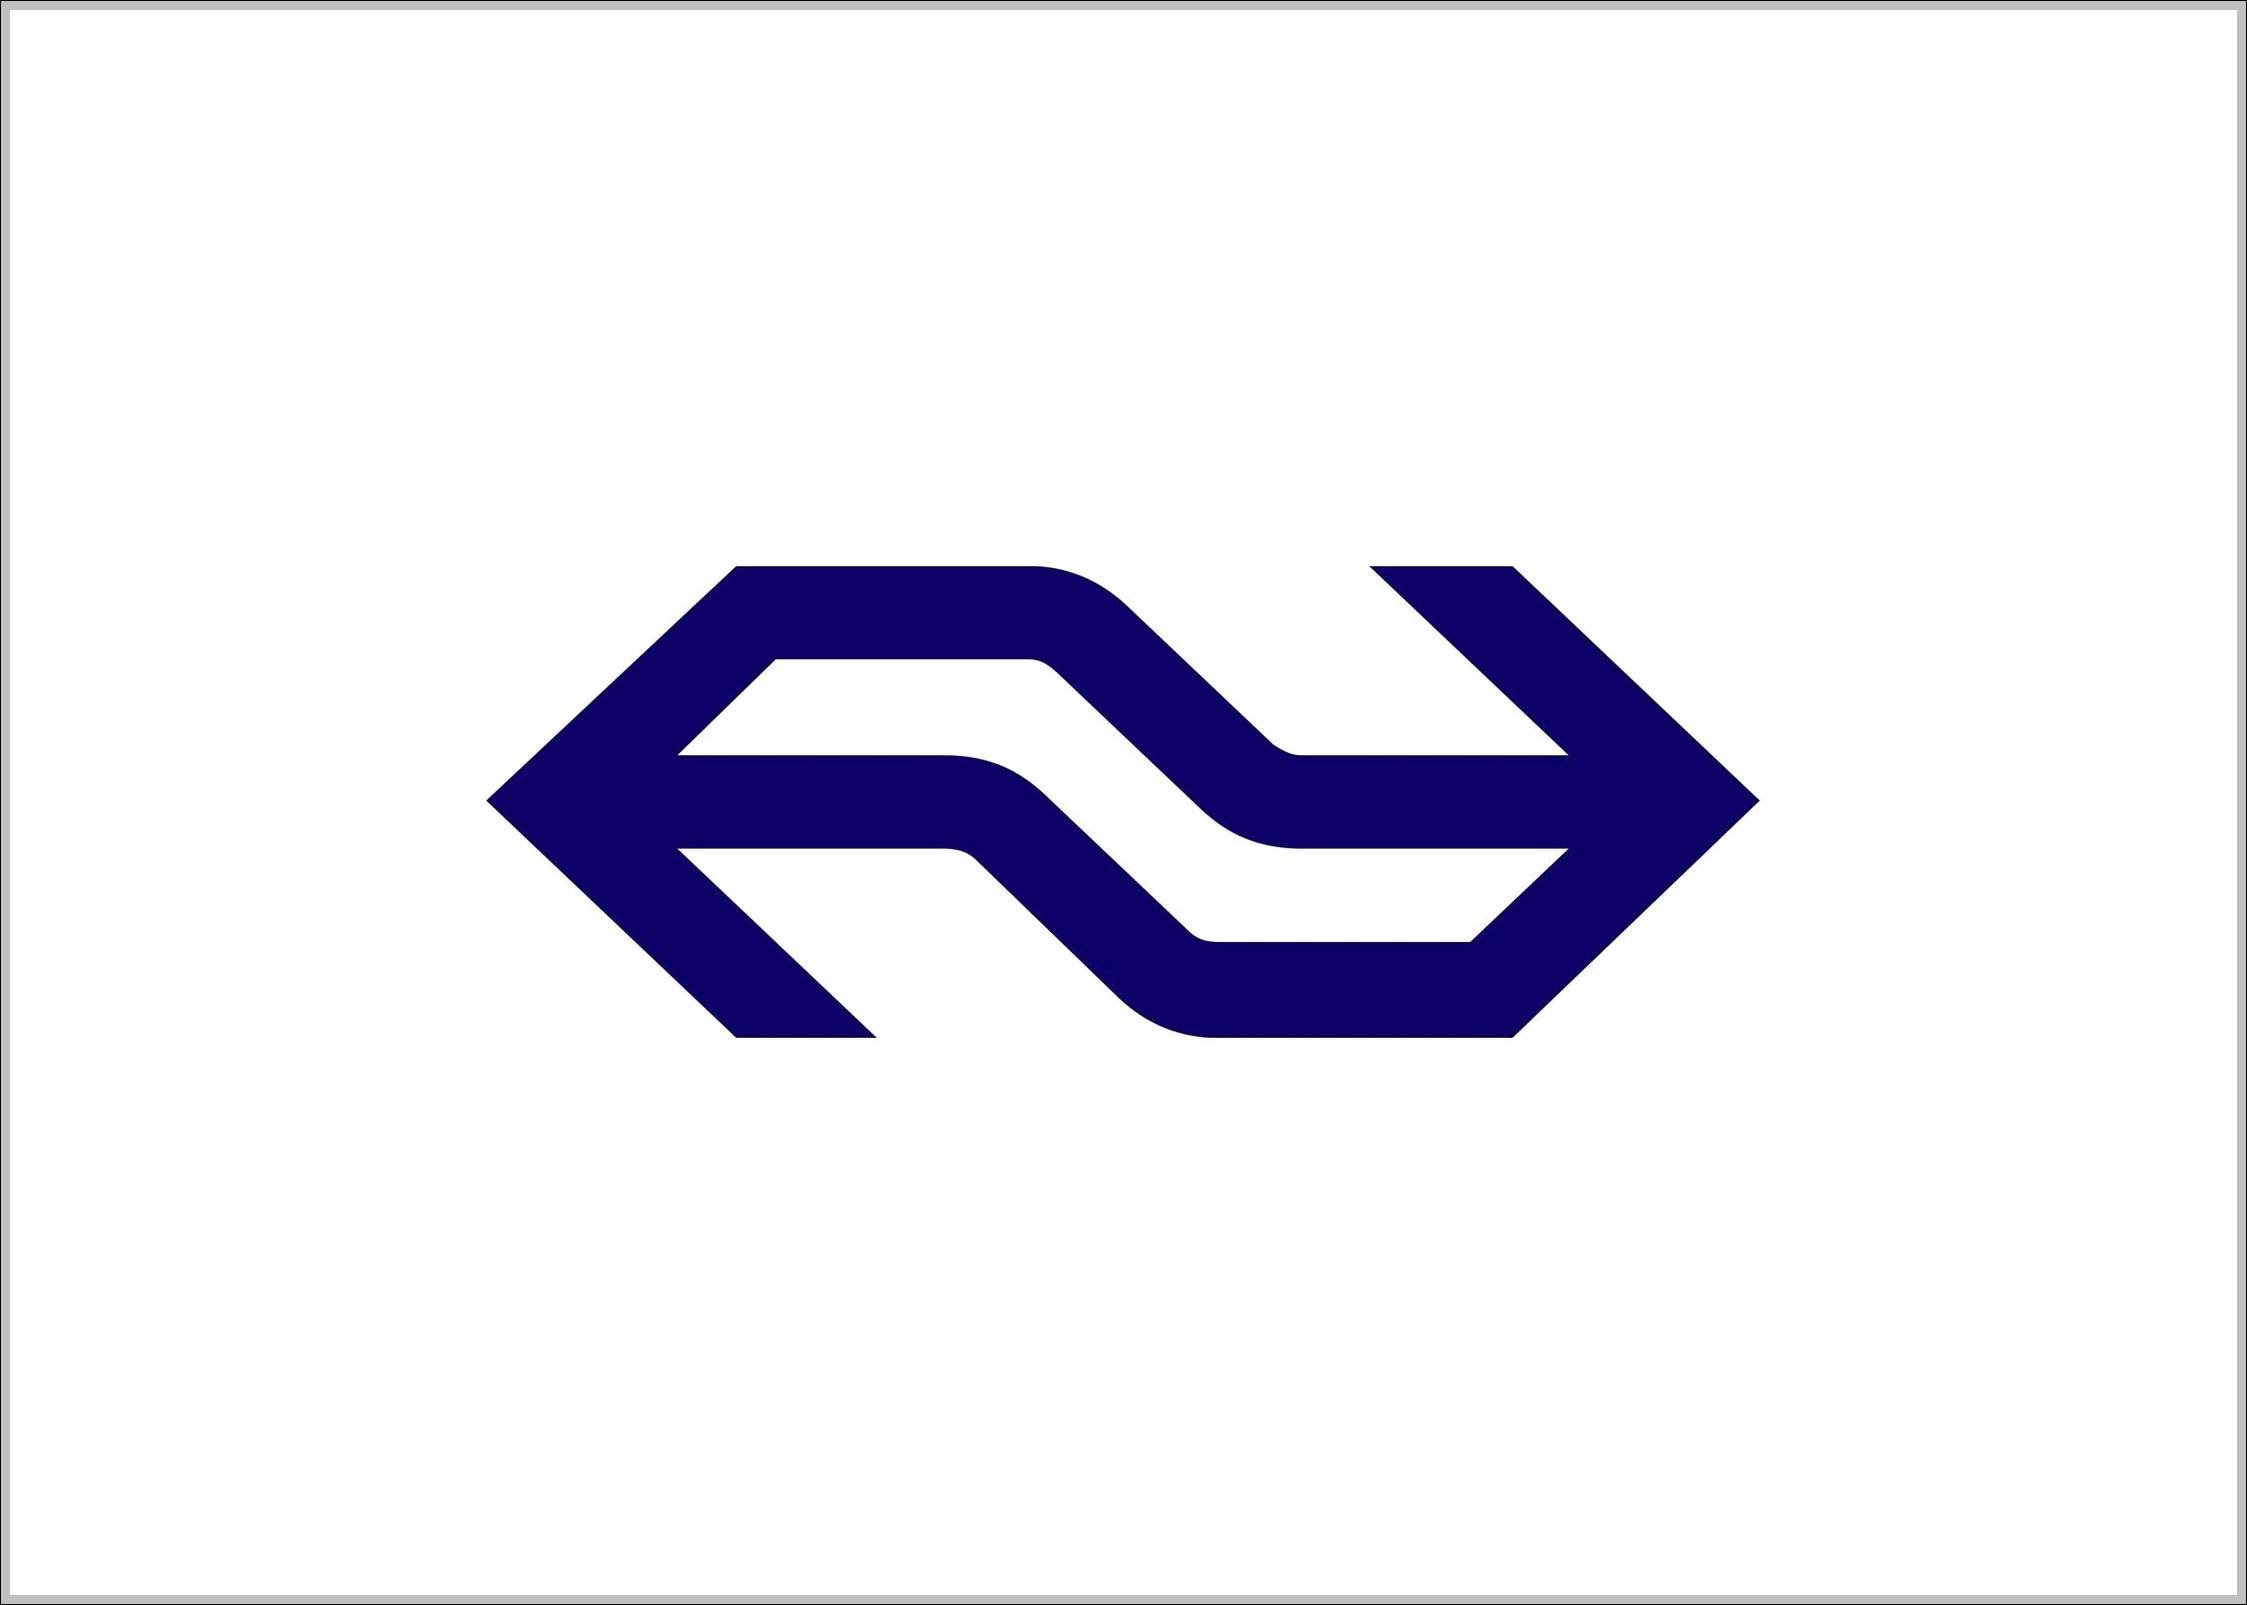 NS Logo - Nederlandse spoorwegen NS logo. Logo Sign, Signs, Symbols